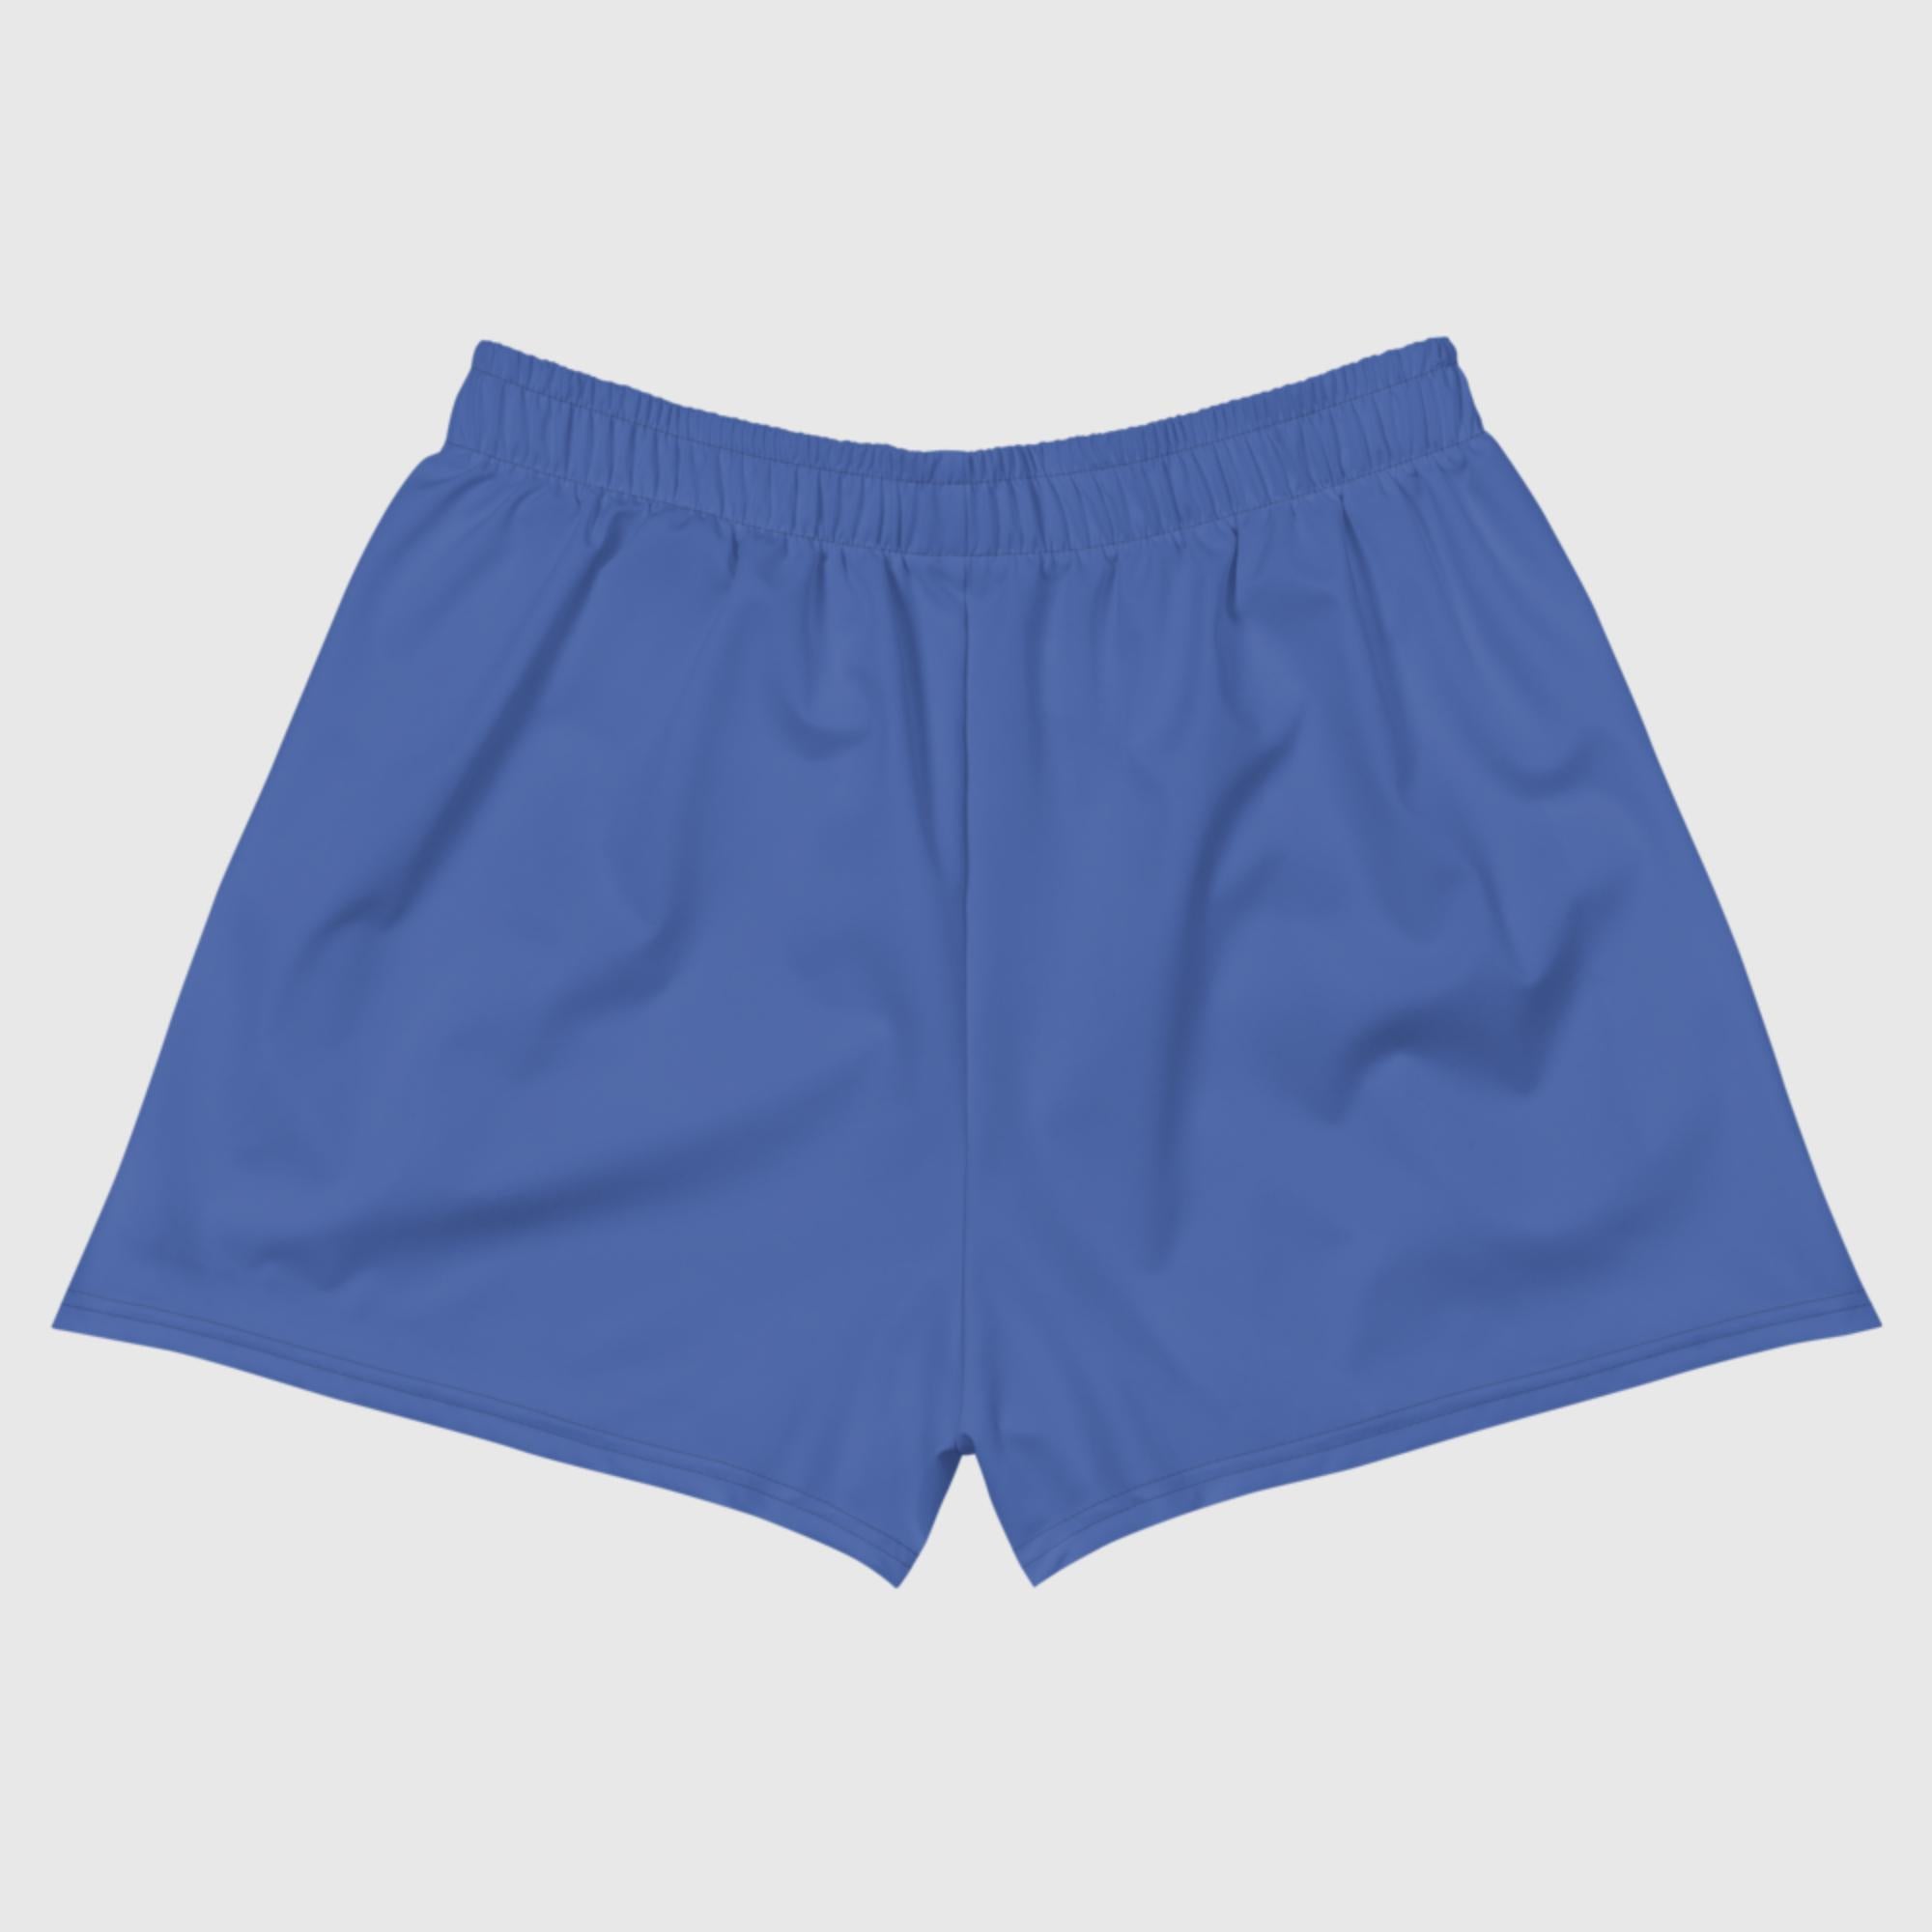 Women's Athletic Short Shorts - Mariner Blue - Sunset Harbor Clothing